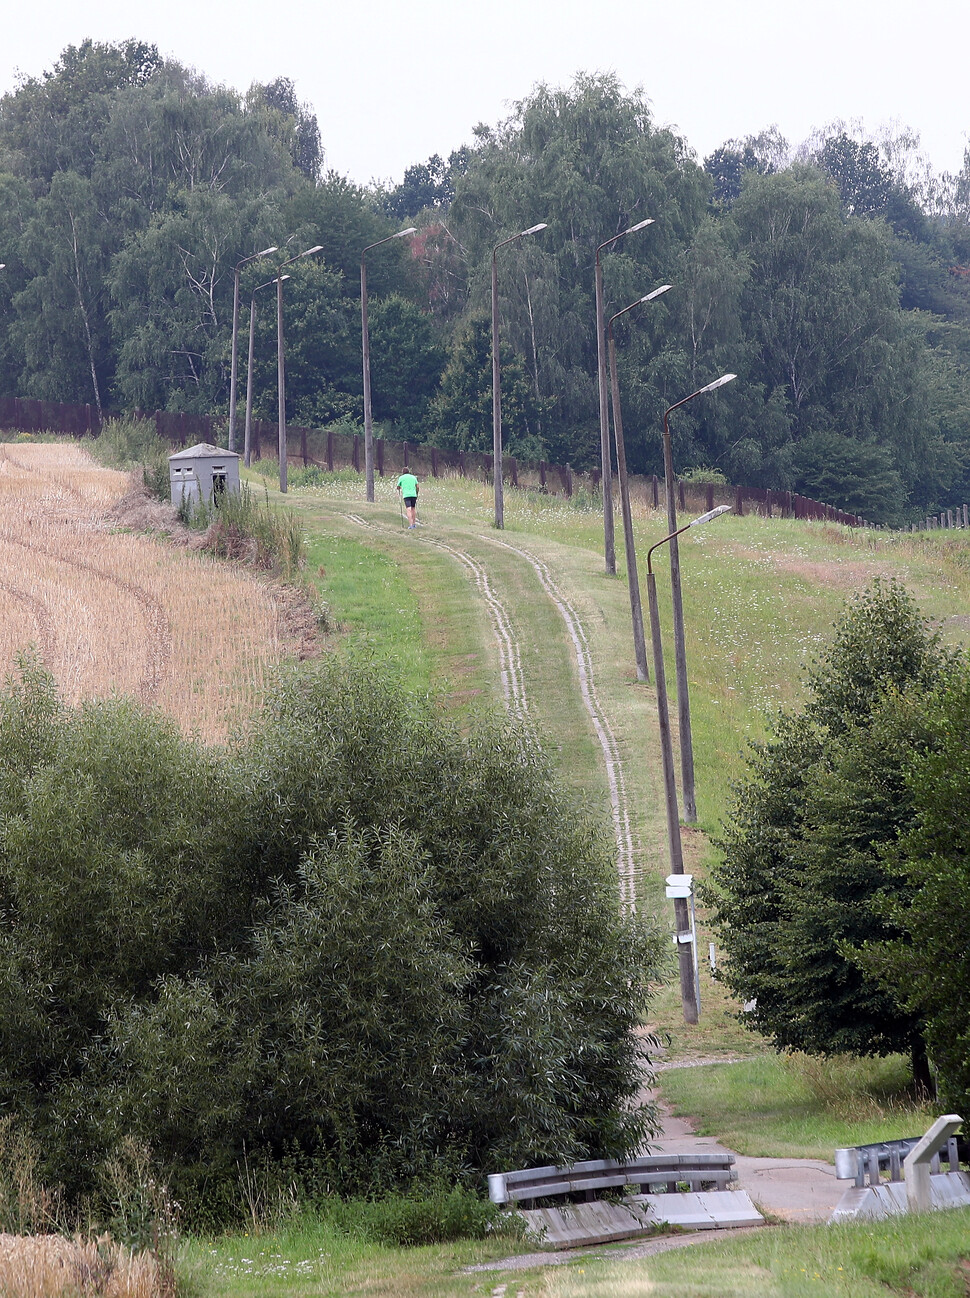 2019년 8월 독일 중부 타이스퉁겐 인근의 옛 동·서독 분단선에 있는 국경 박물관에 전시한, 한때 유럽을 동서로 가른 철의 장막이 있던 국경선의 흔적을 찍은 사진. REUTERS